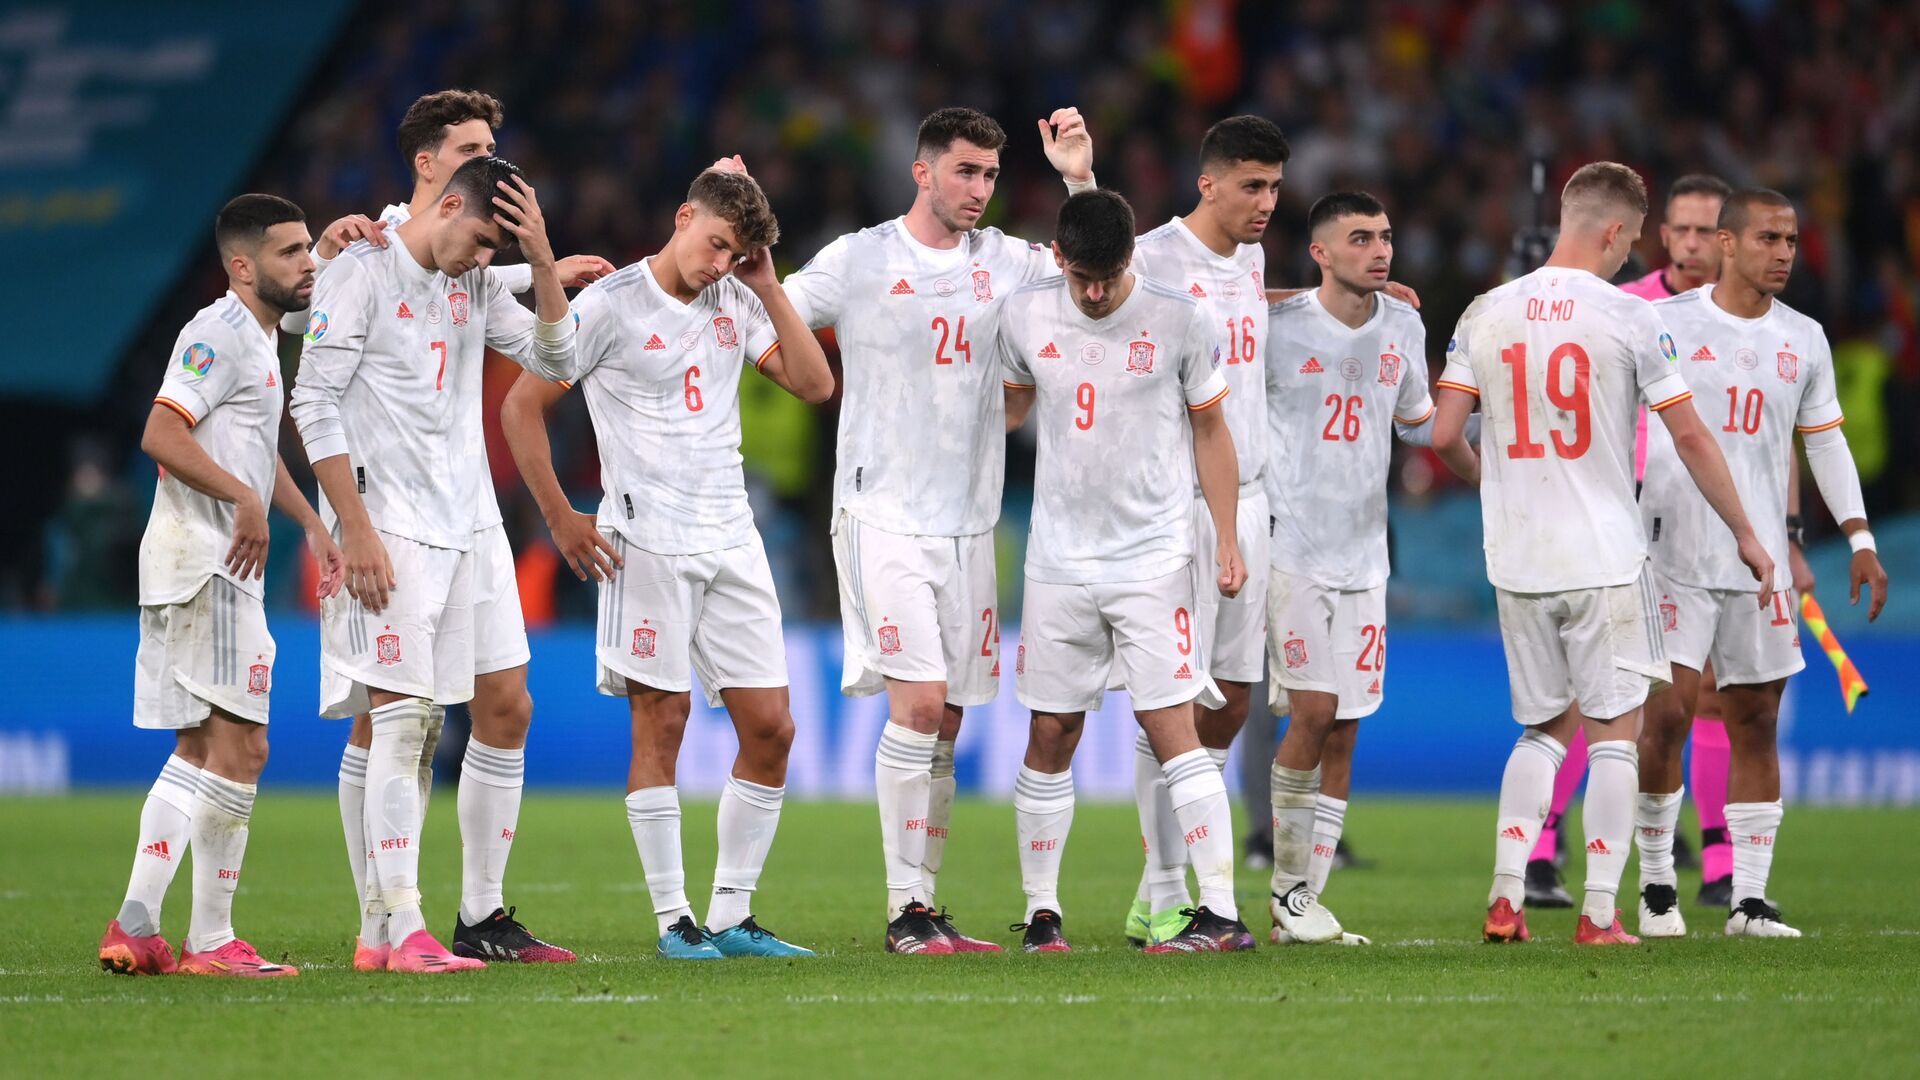 منتخب إسبانيا بعد خسارته بركلات الترجيح من إيطاليا في نصف نهائي يورو 2020 - سبوتنيك عربي, 1920, 30.09.2021